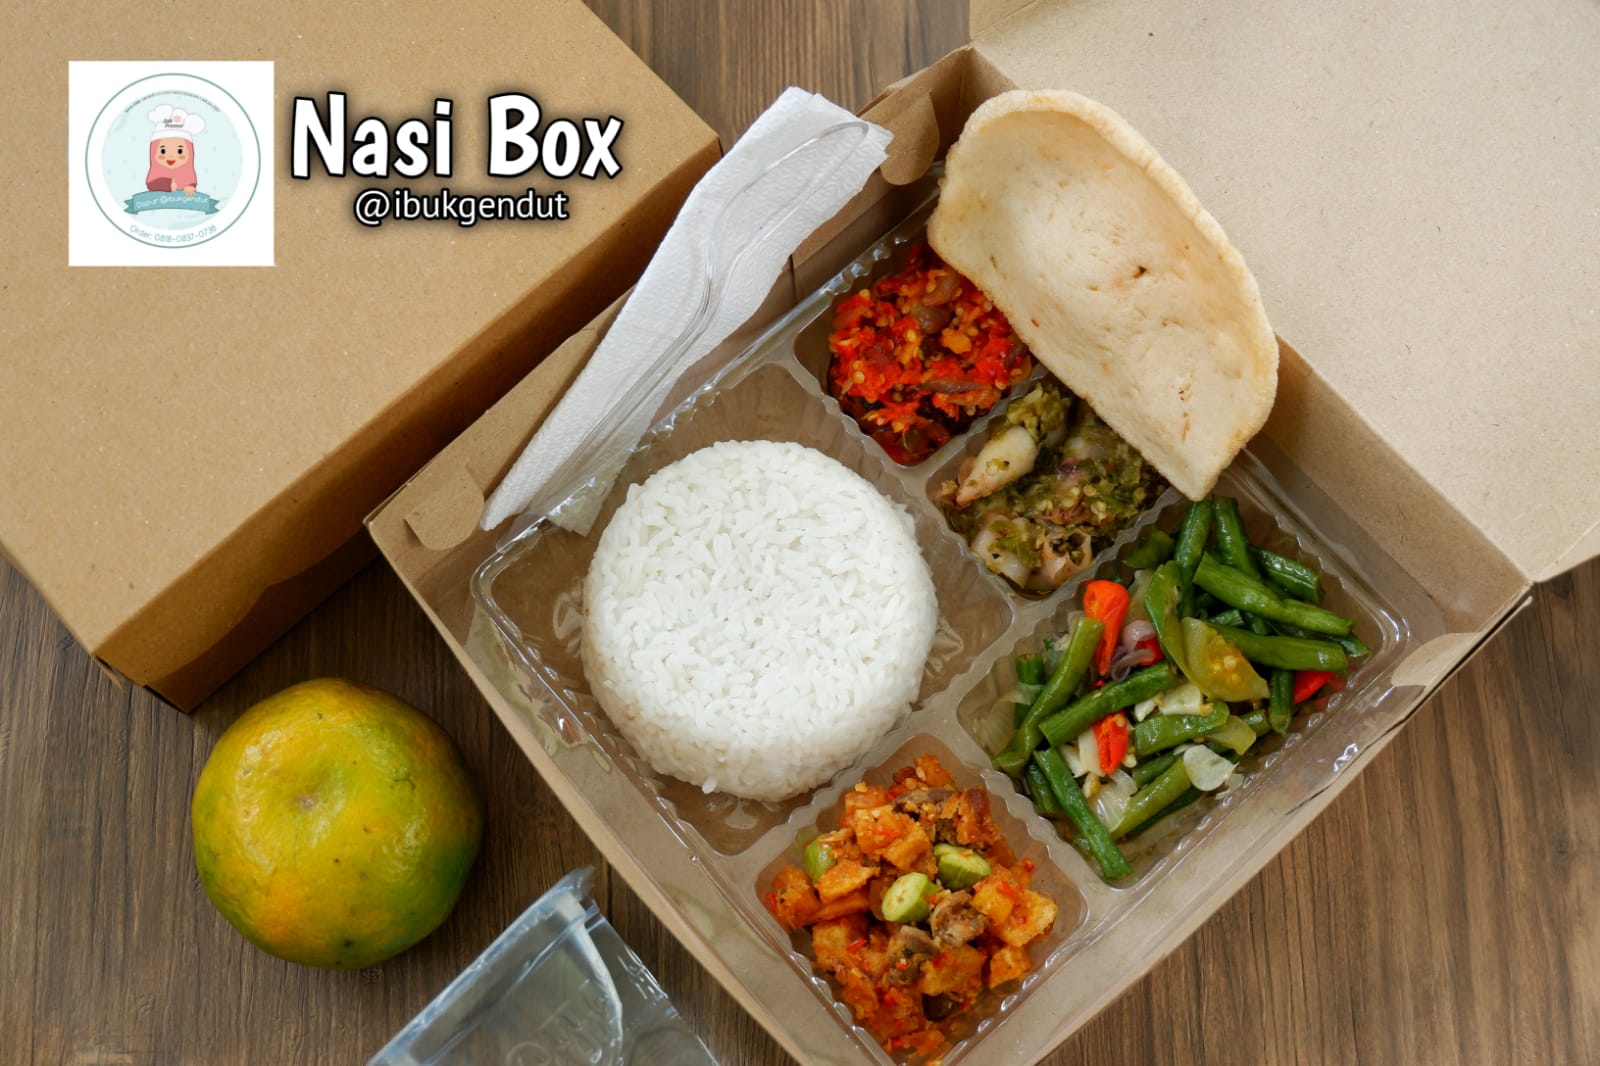 Nasi Box 1 Kue Ibu Gendut